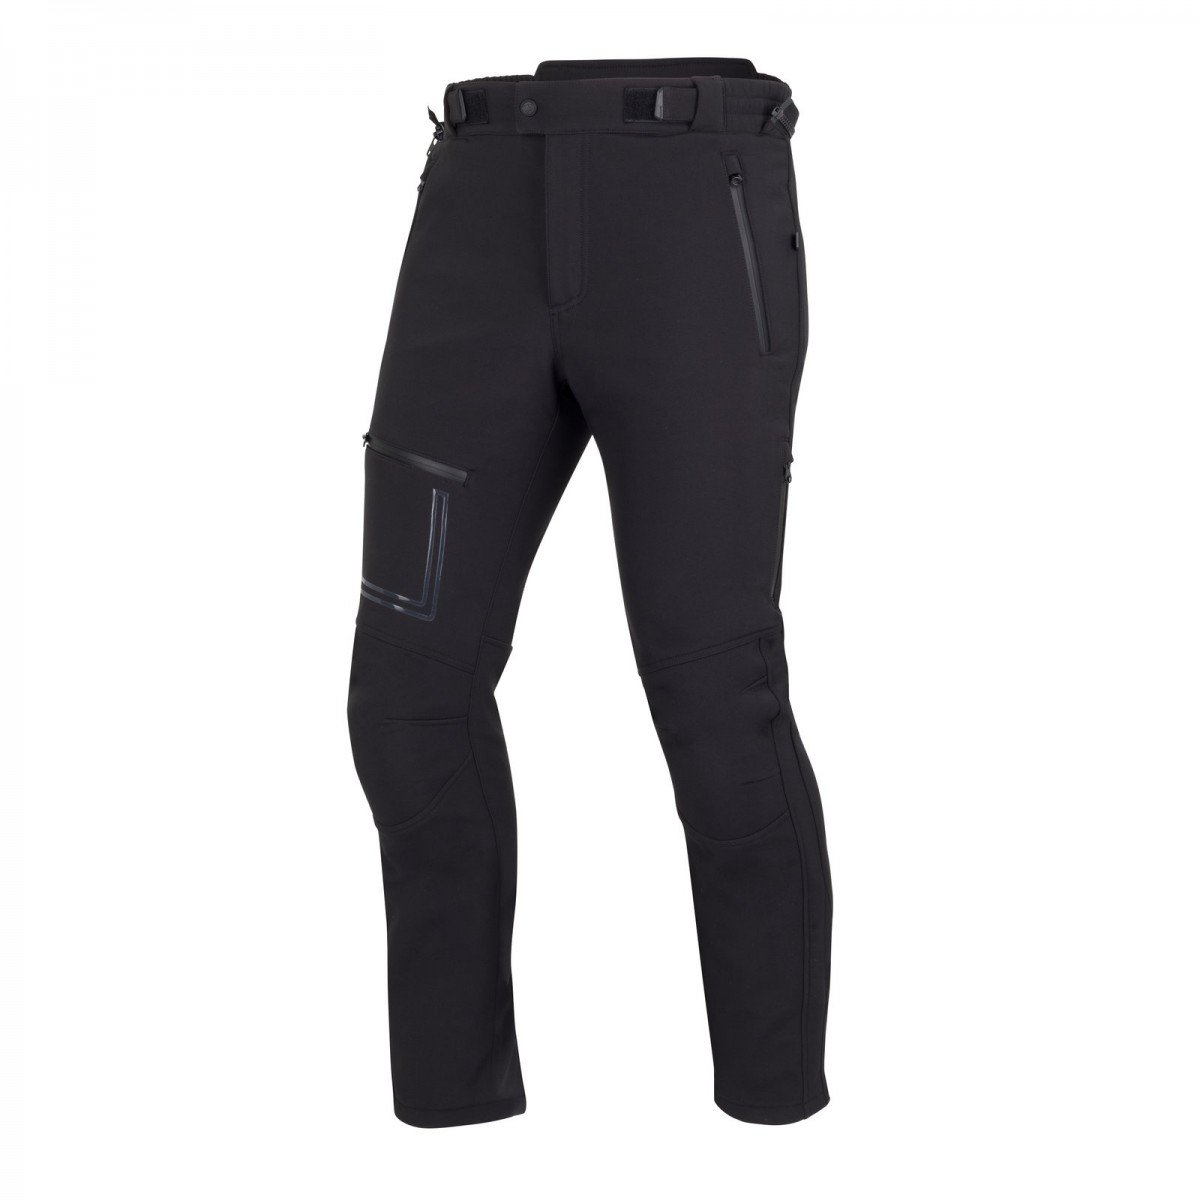 Image of Bering Alkor Trousers Black Size XL EN